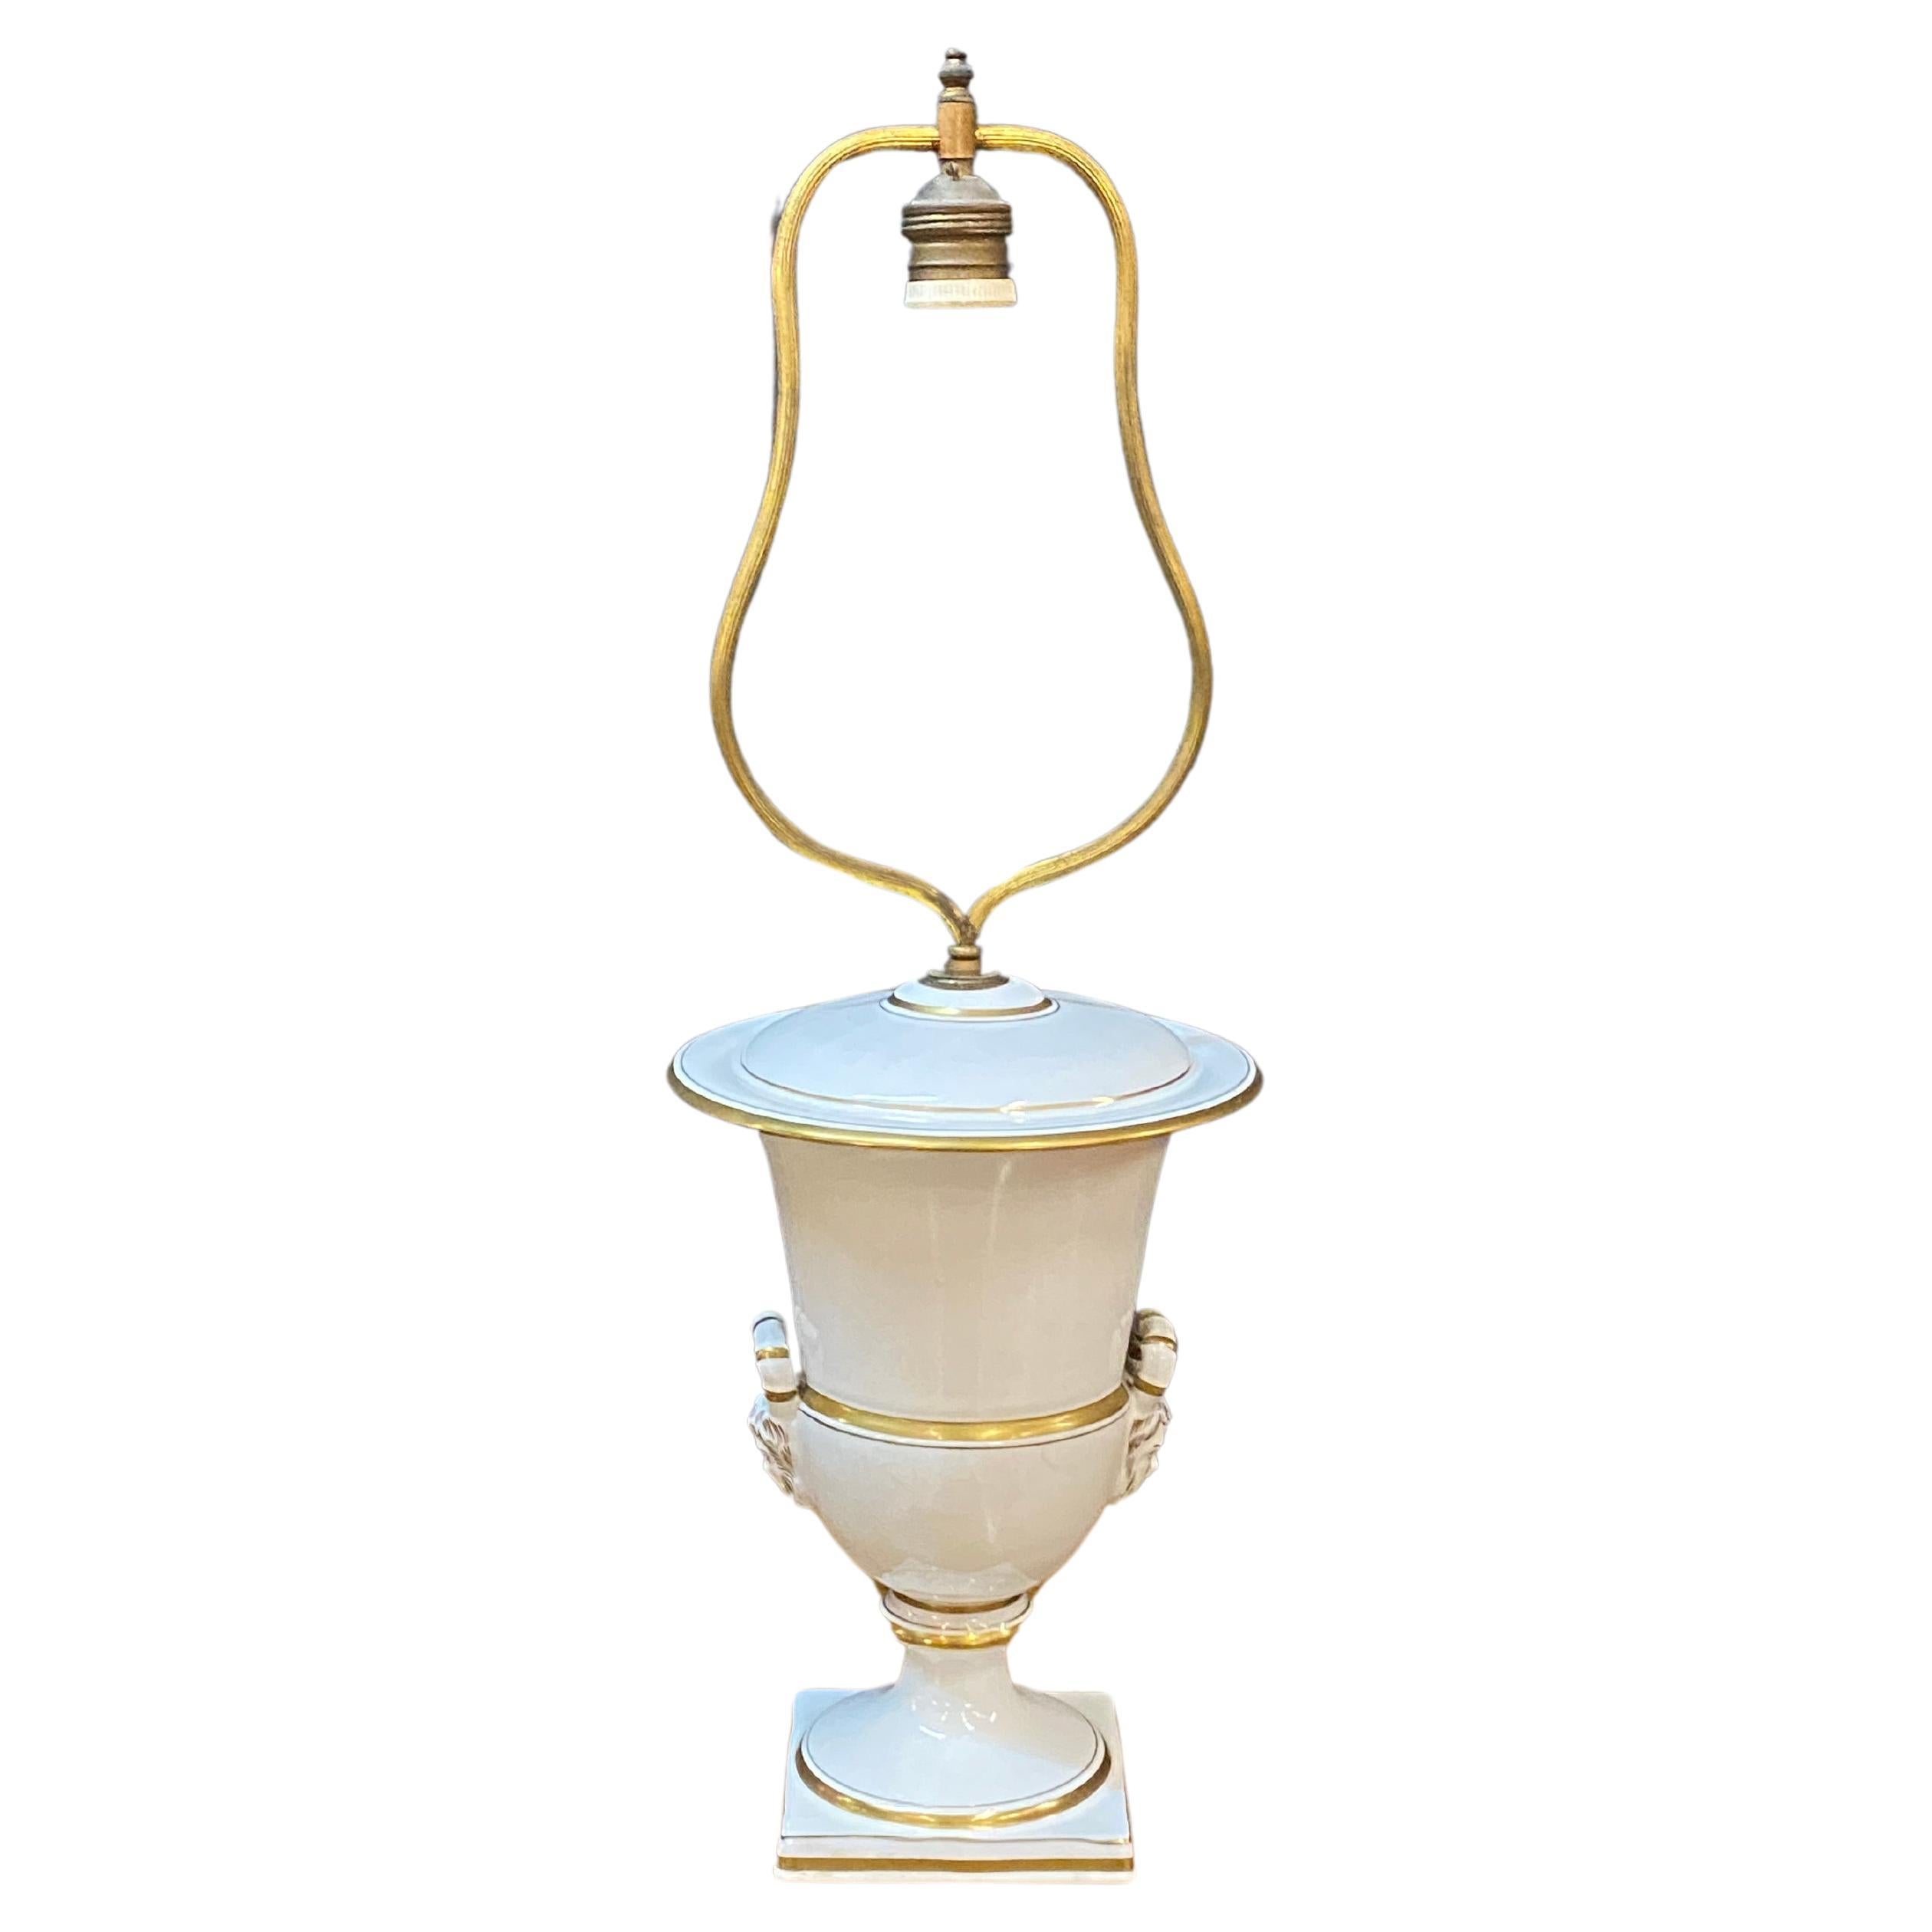 Louis Philippe table lamp, Paris porcelain style circa 1850  